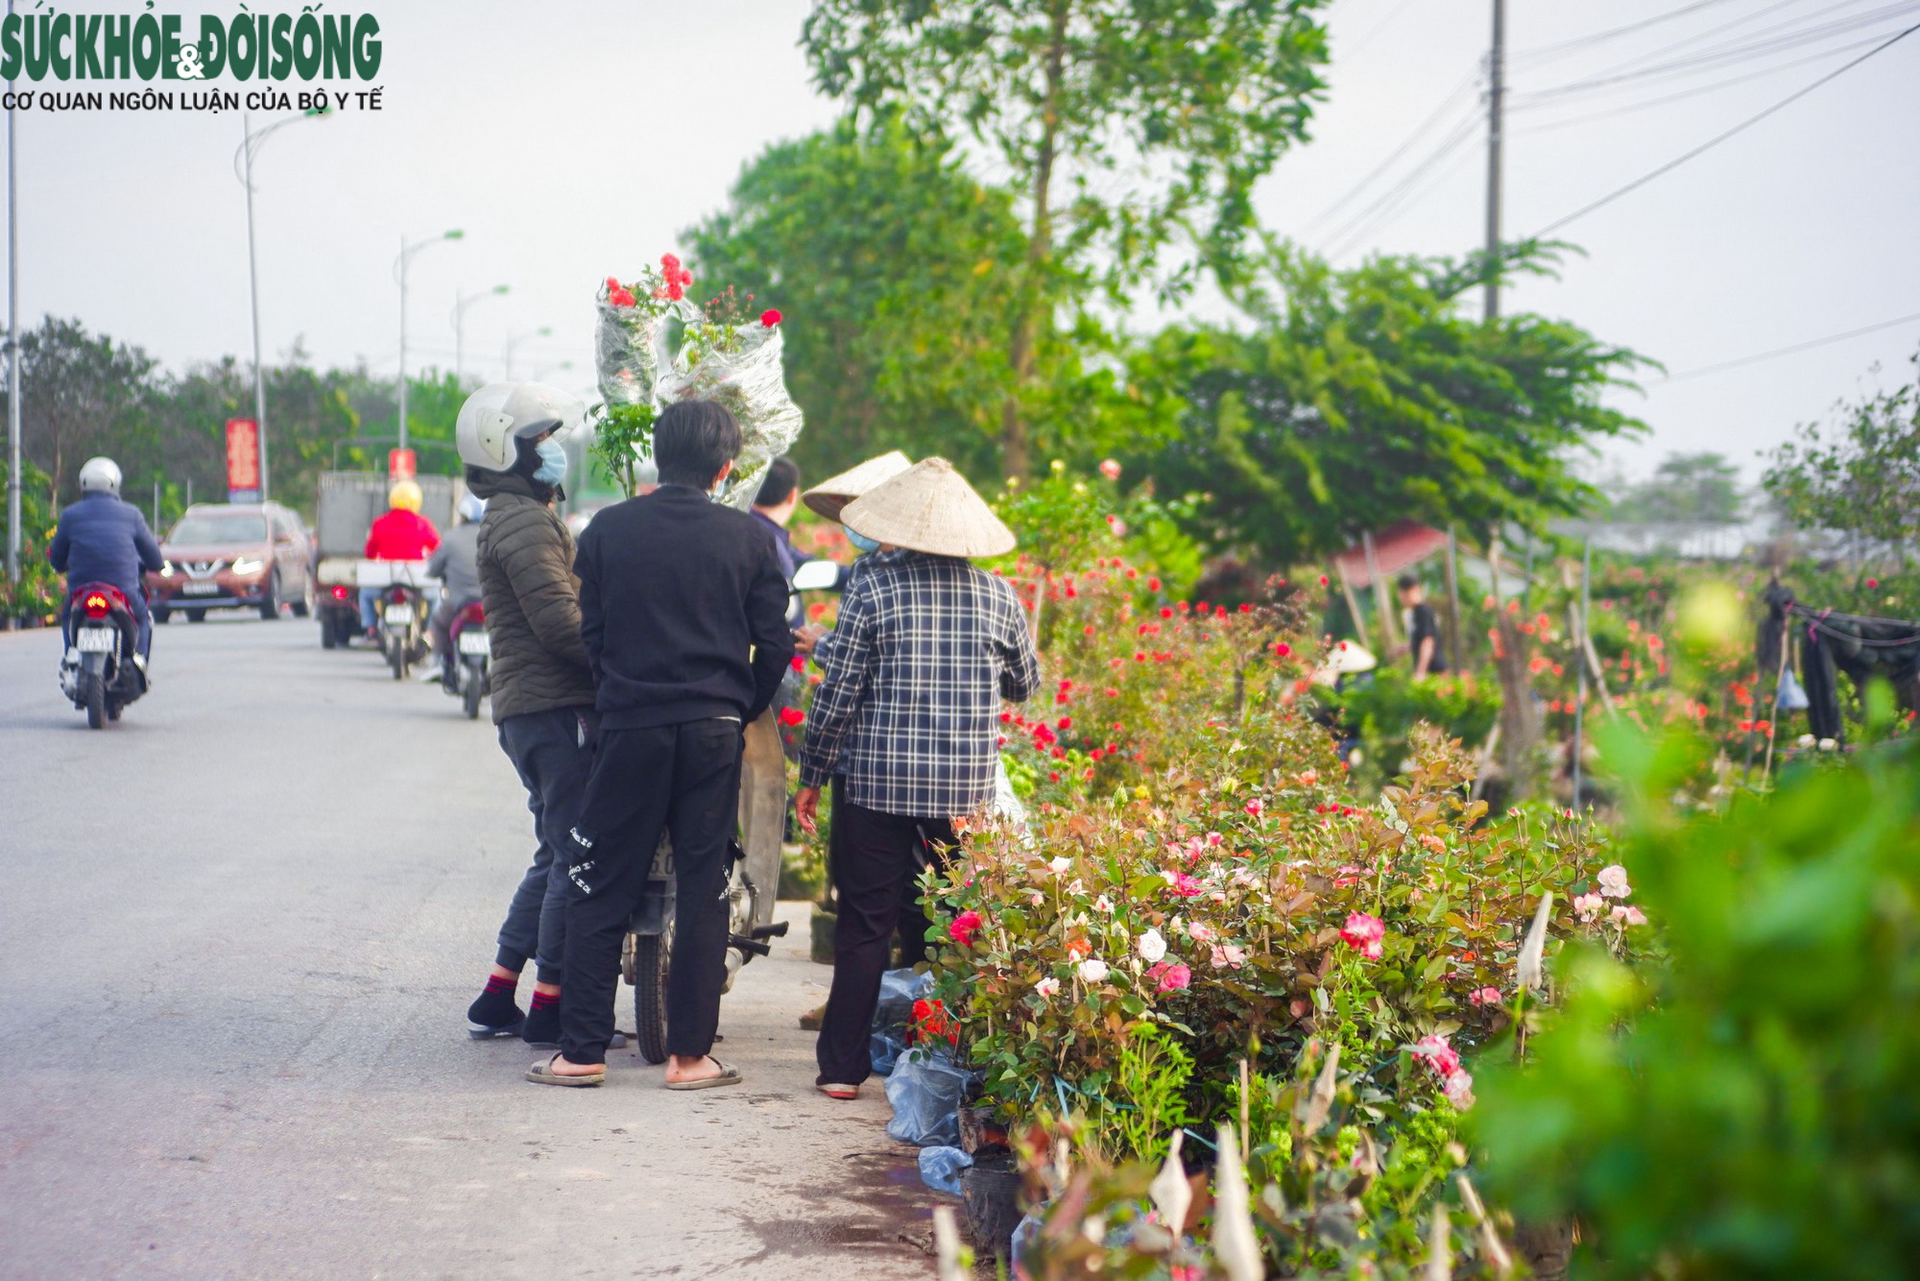 Chợ hoa lớn nhất Hà Nội hối hả phục vụ dịp cận Tết - Ảnh 7.